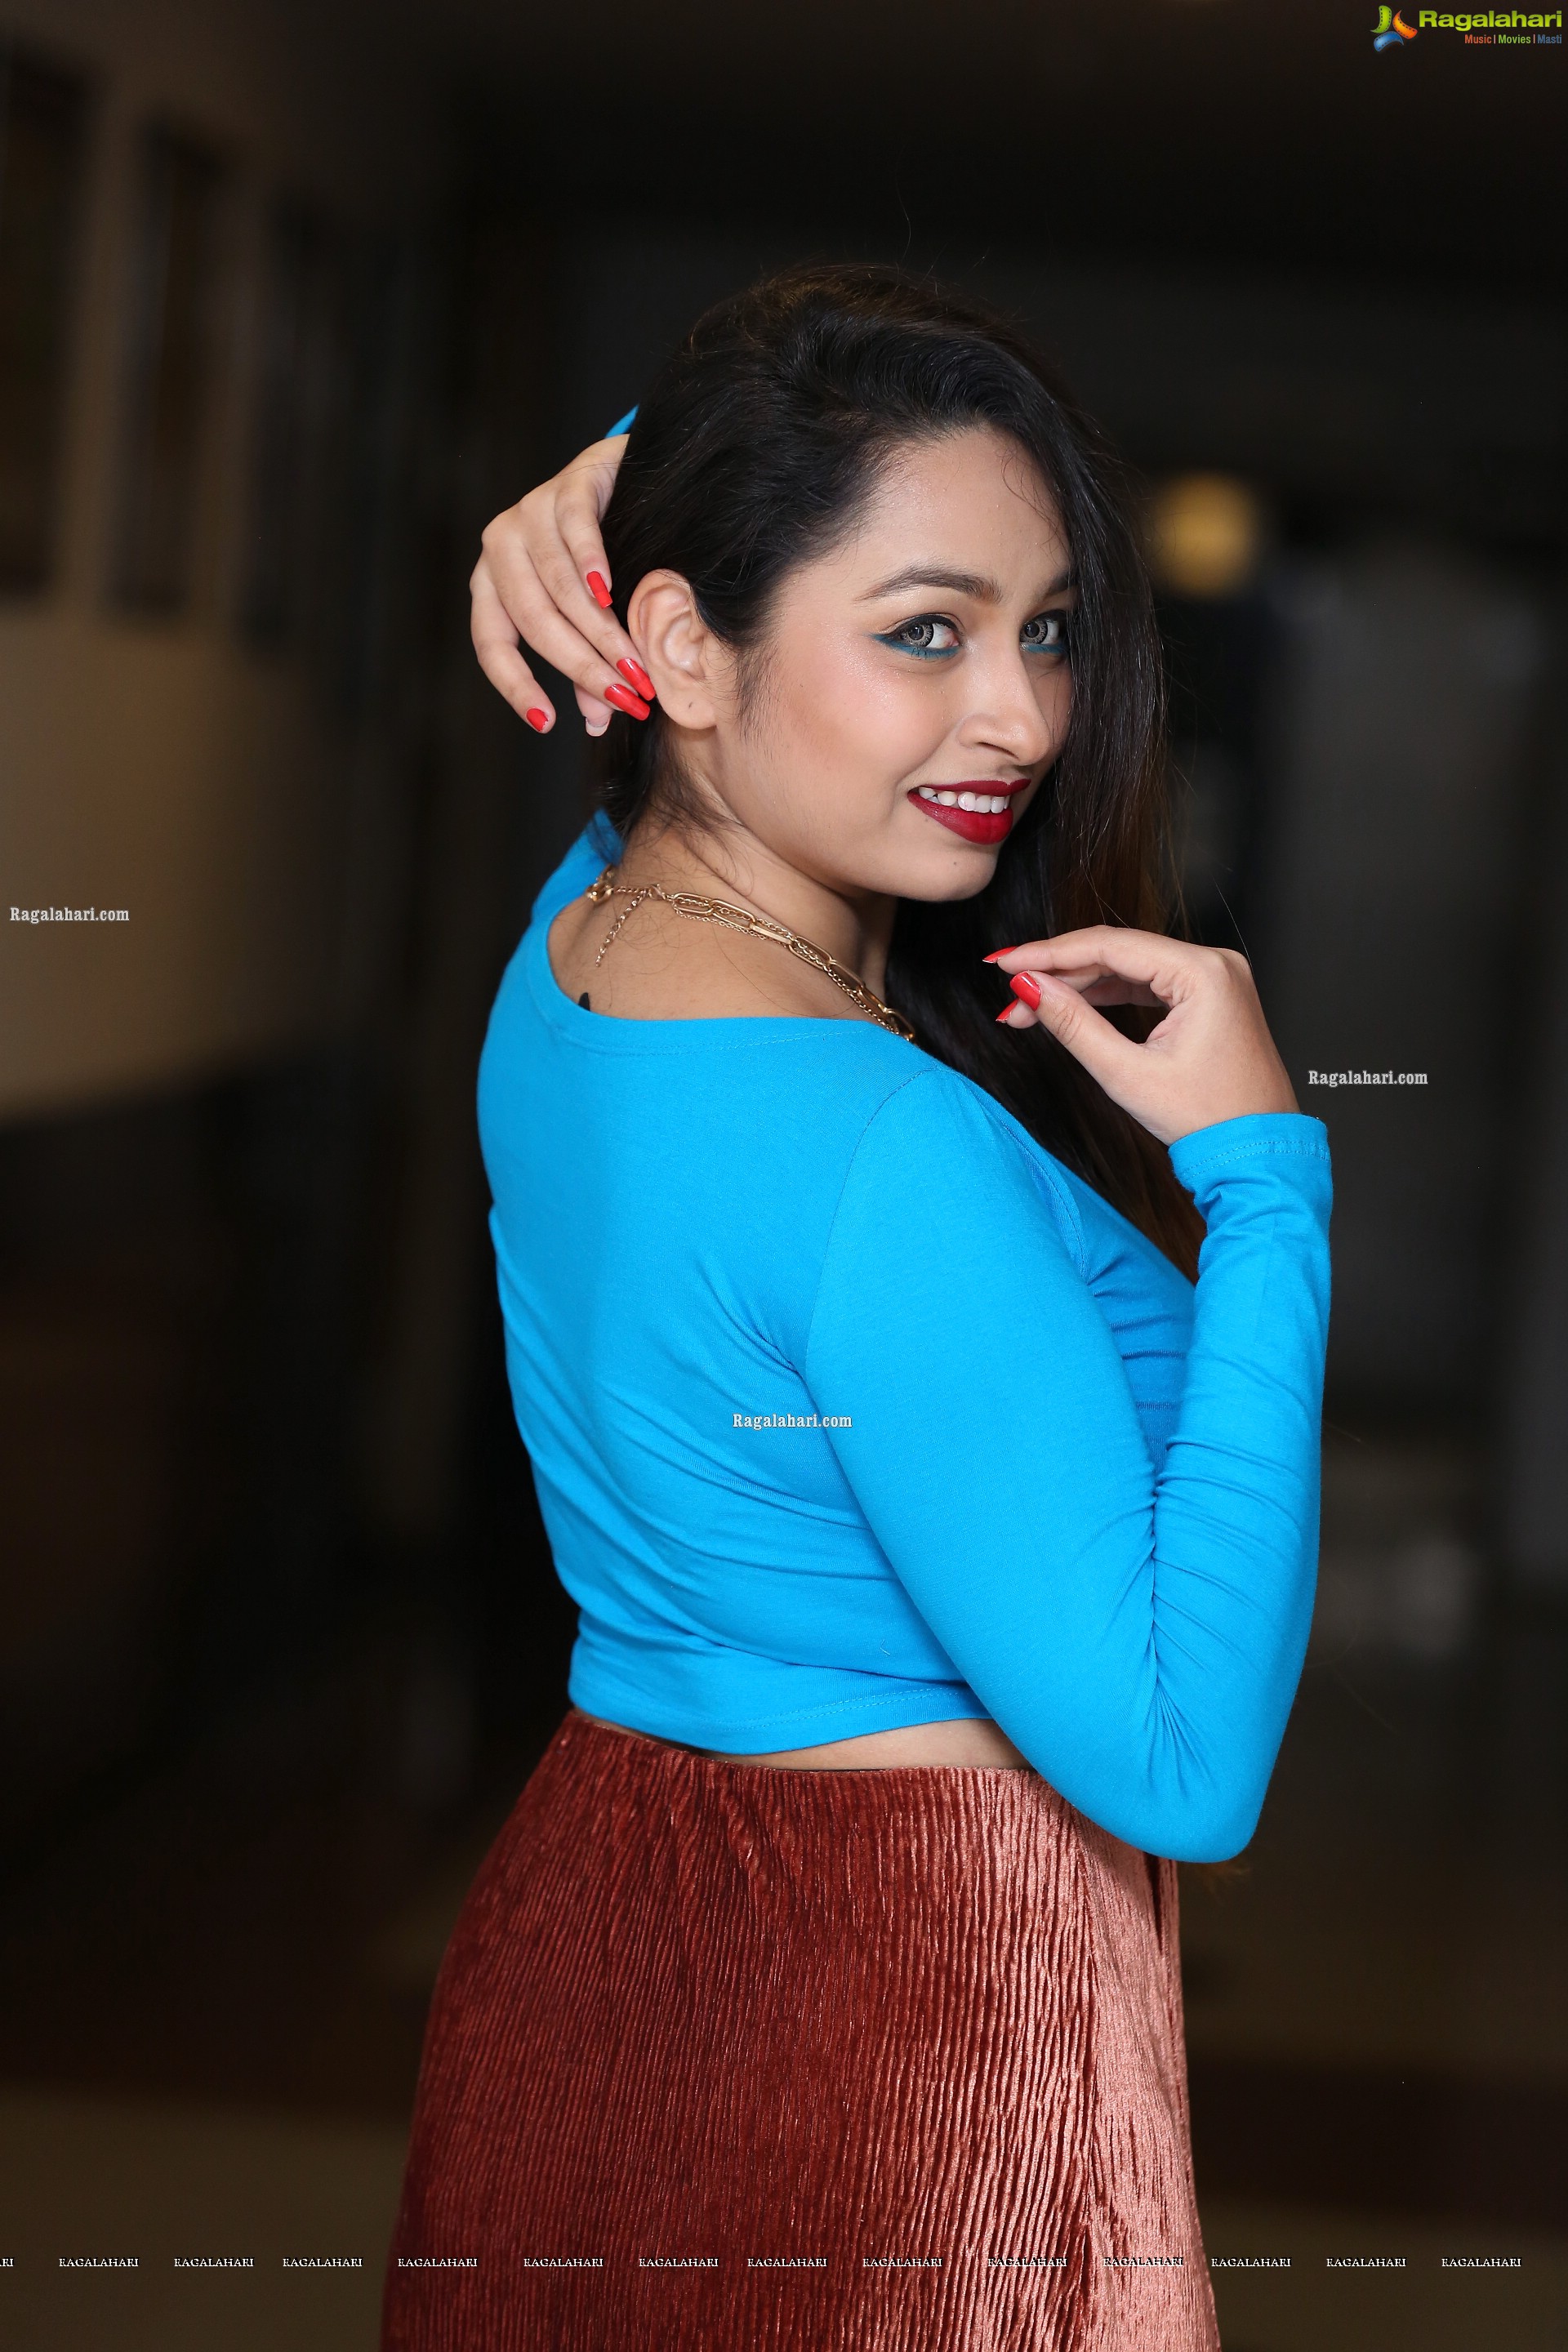 Juhi Chavan in High Slit Skirt, HD Photo Gallery